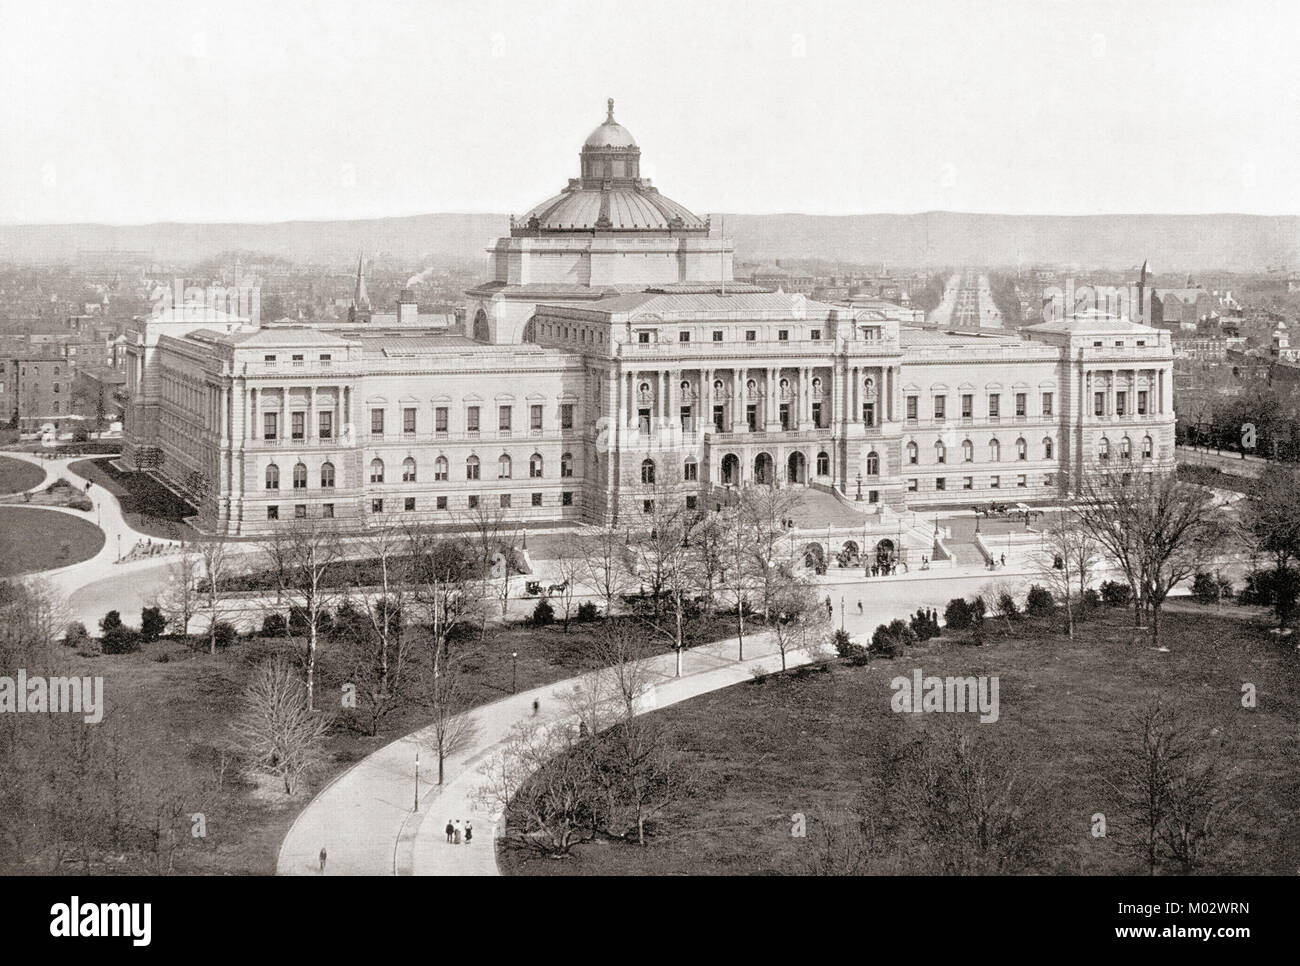 La Bibliothèque du Congrès, Washington D.C., Etats-Unis d'Amérique, vu ici c.1911, il est maintenant connu comme Le Thomas Jefferson Building. Des merveilles du monde, publié c.1911. Banque D'Images